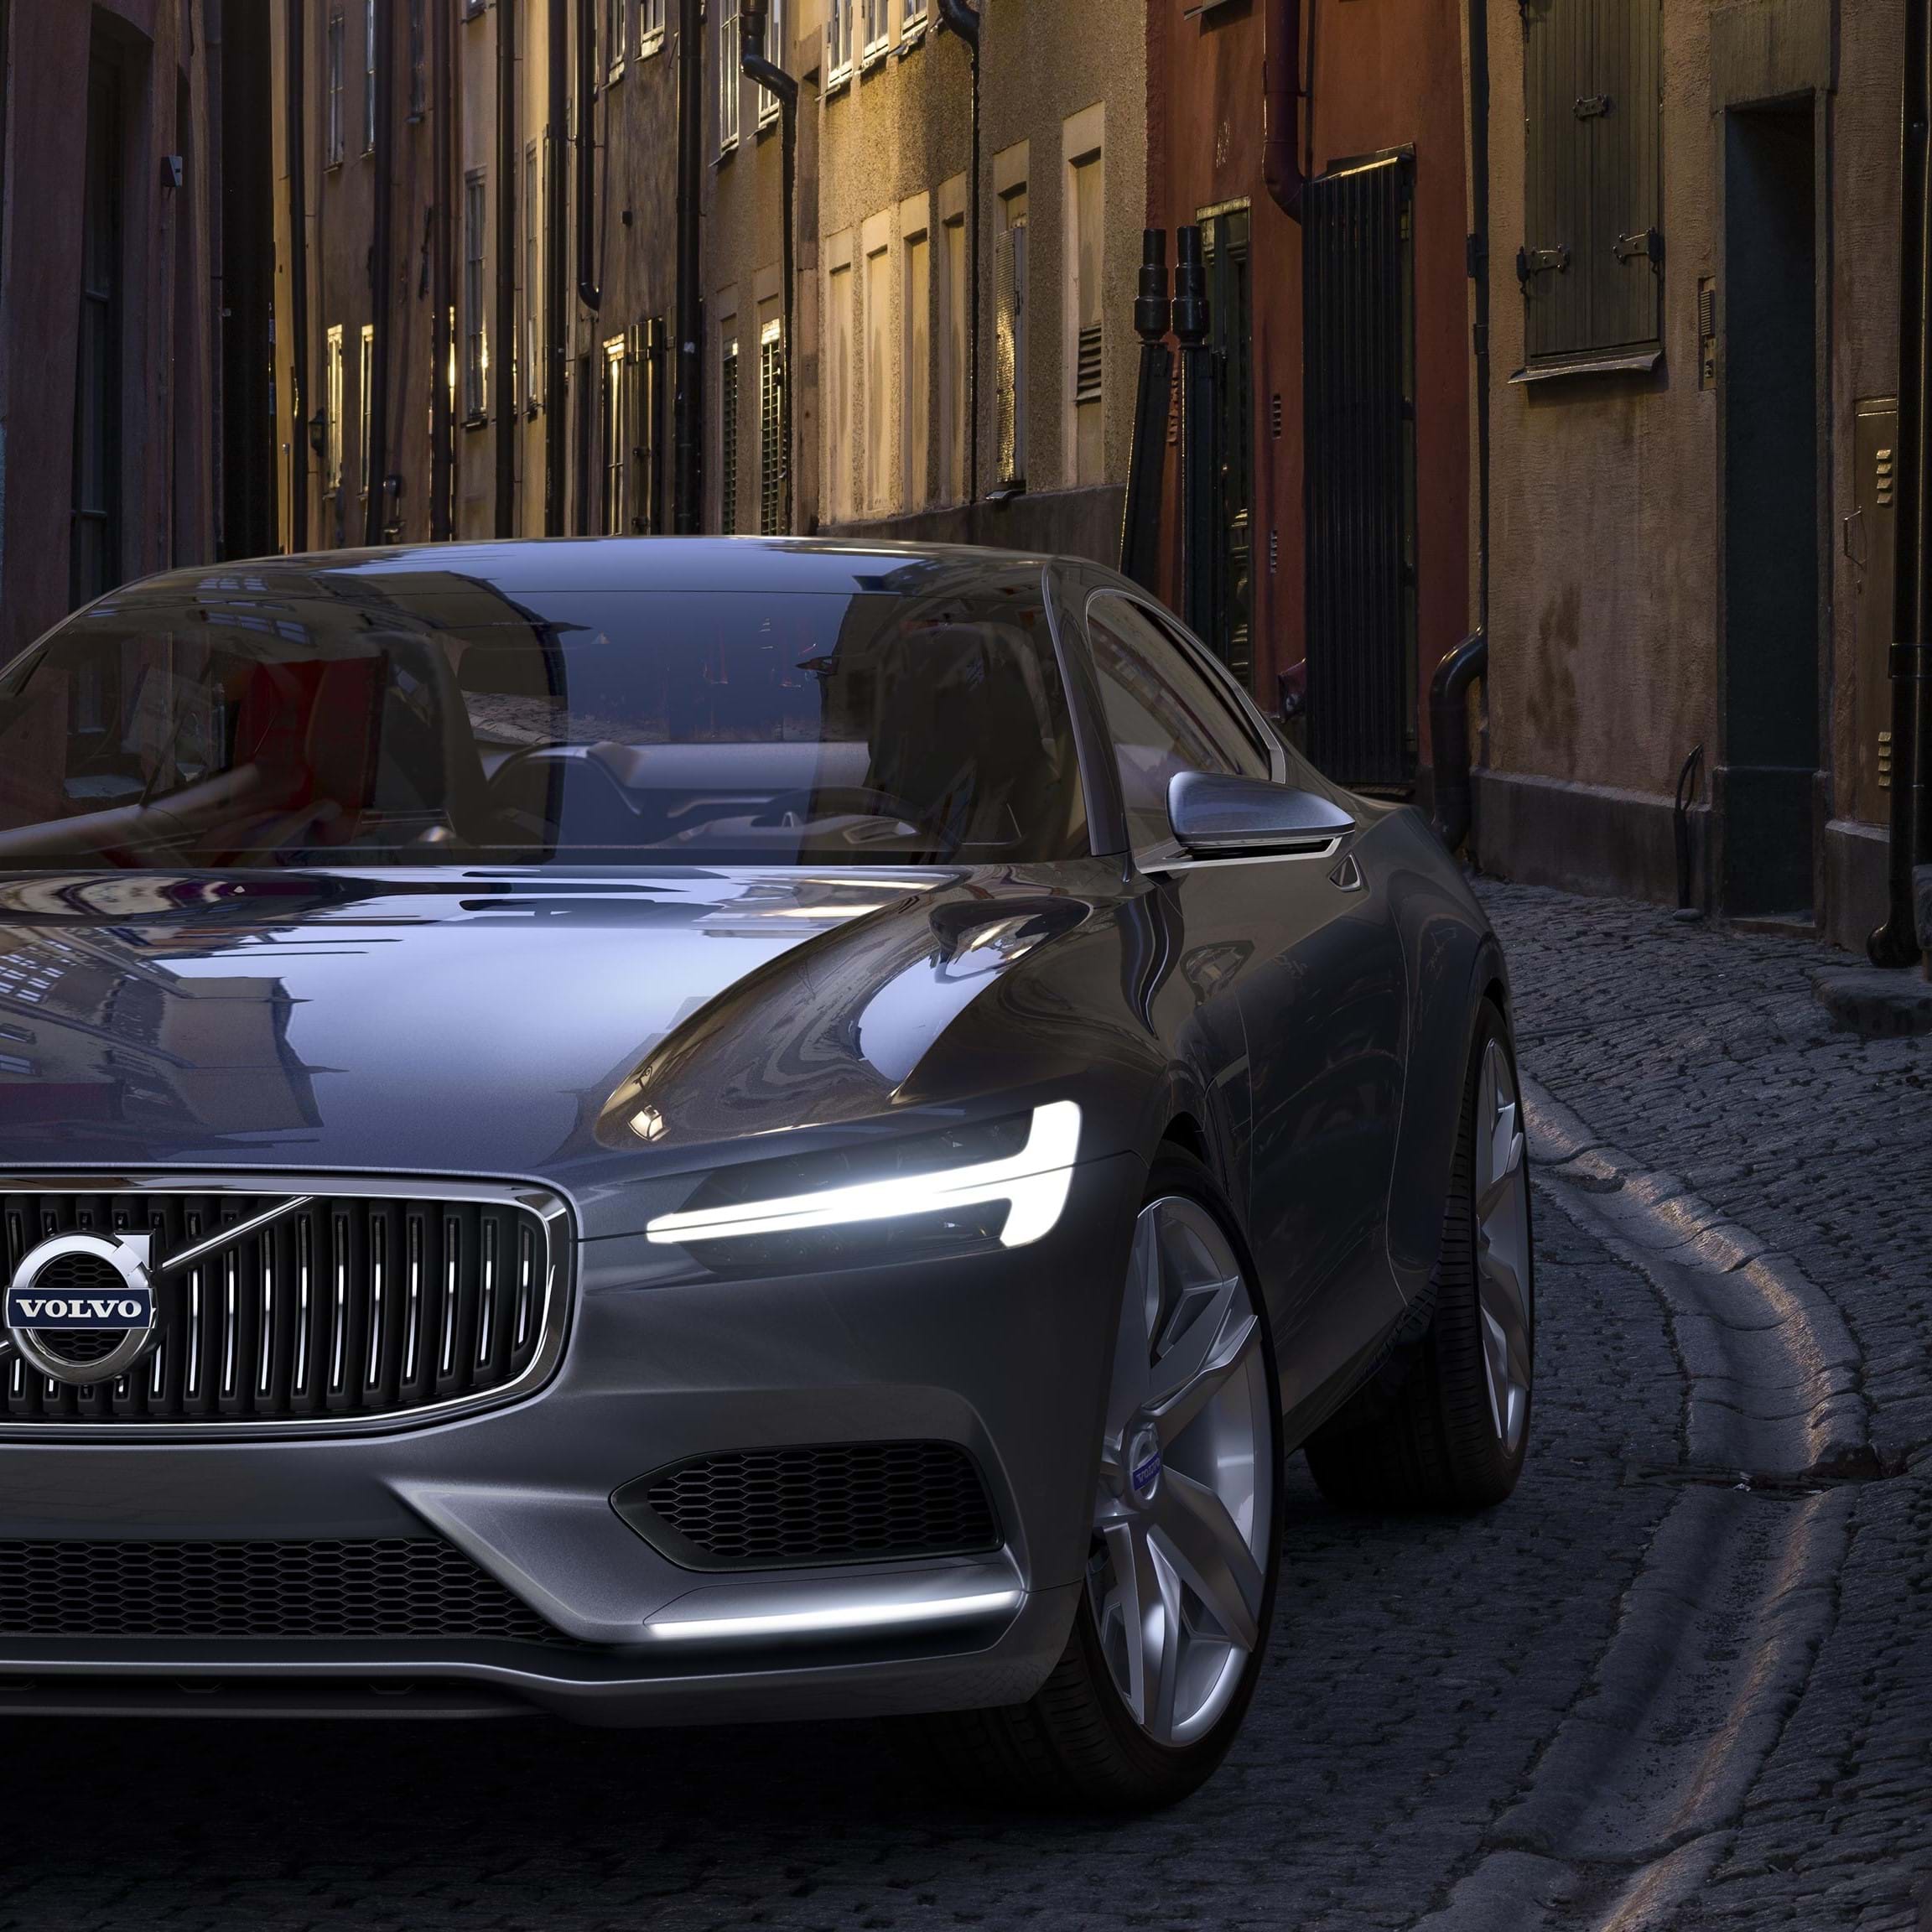 灰色 Volvo Concept Coupe 行駛在鵝卵石街道上